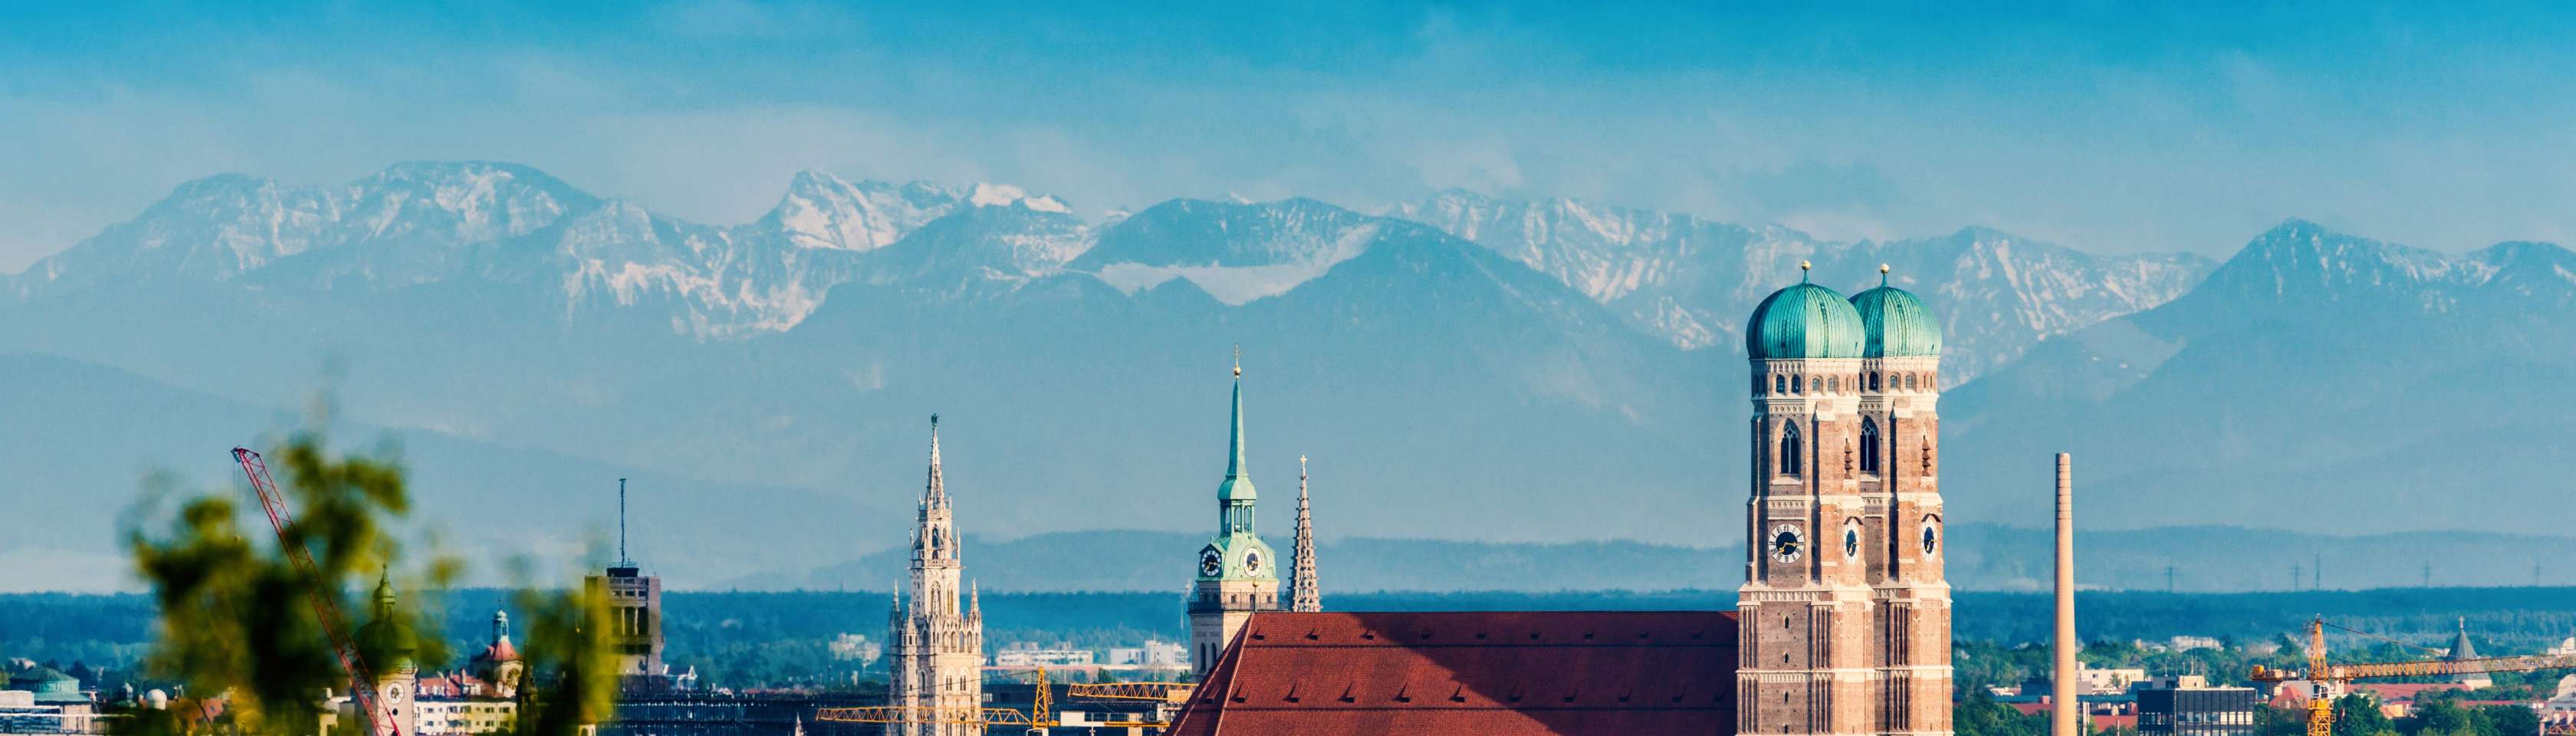 Risikolebensversicherung in München - Blick auf die münchner Altstadt und die Frauenkirche